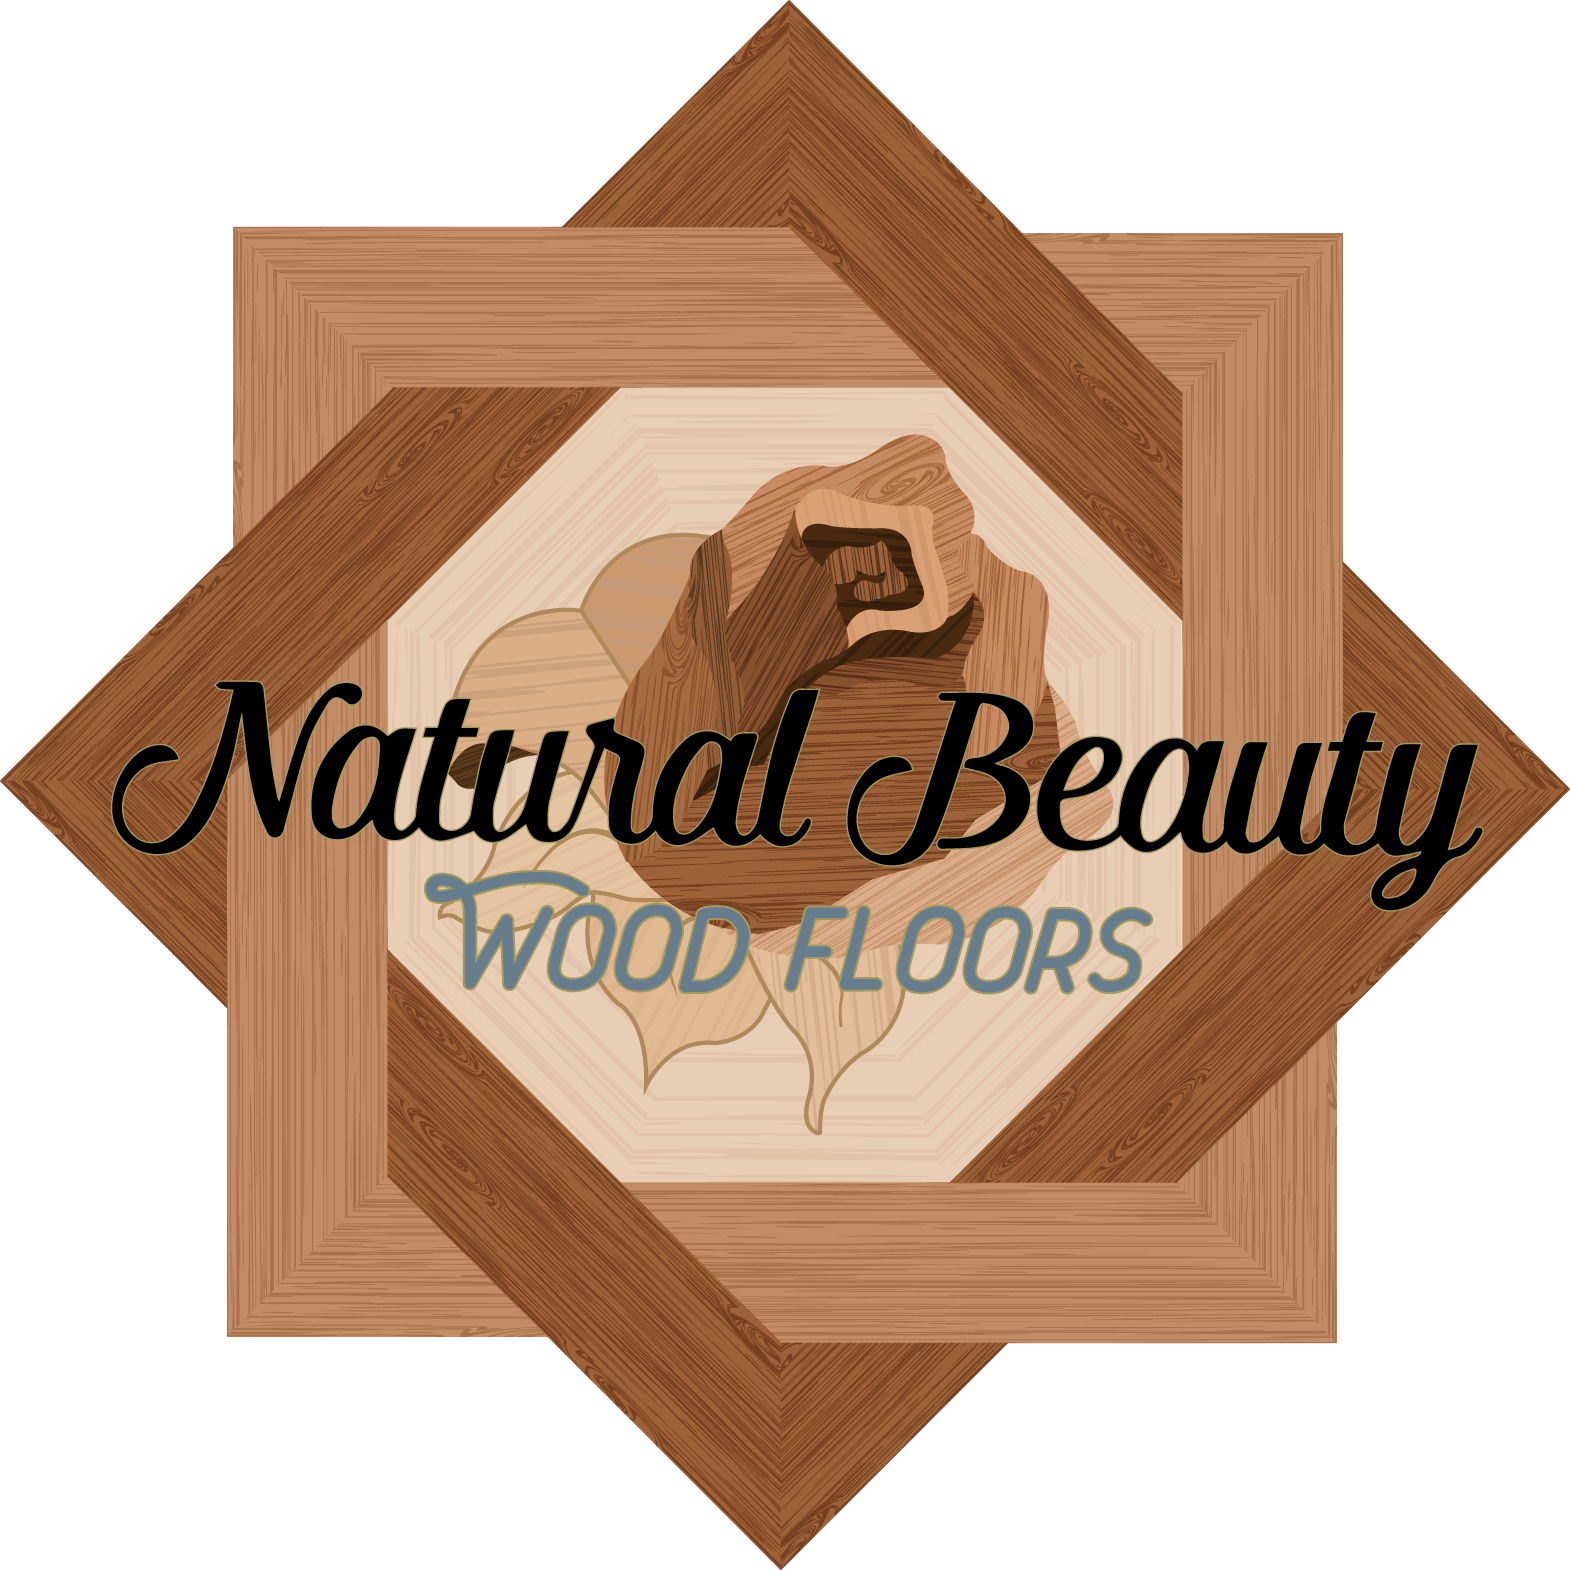 Detroit's Best Hardwood Floor Company